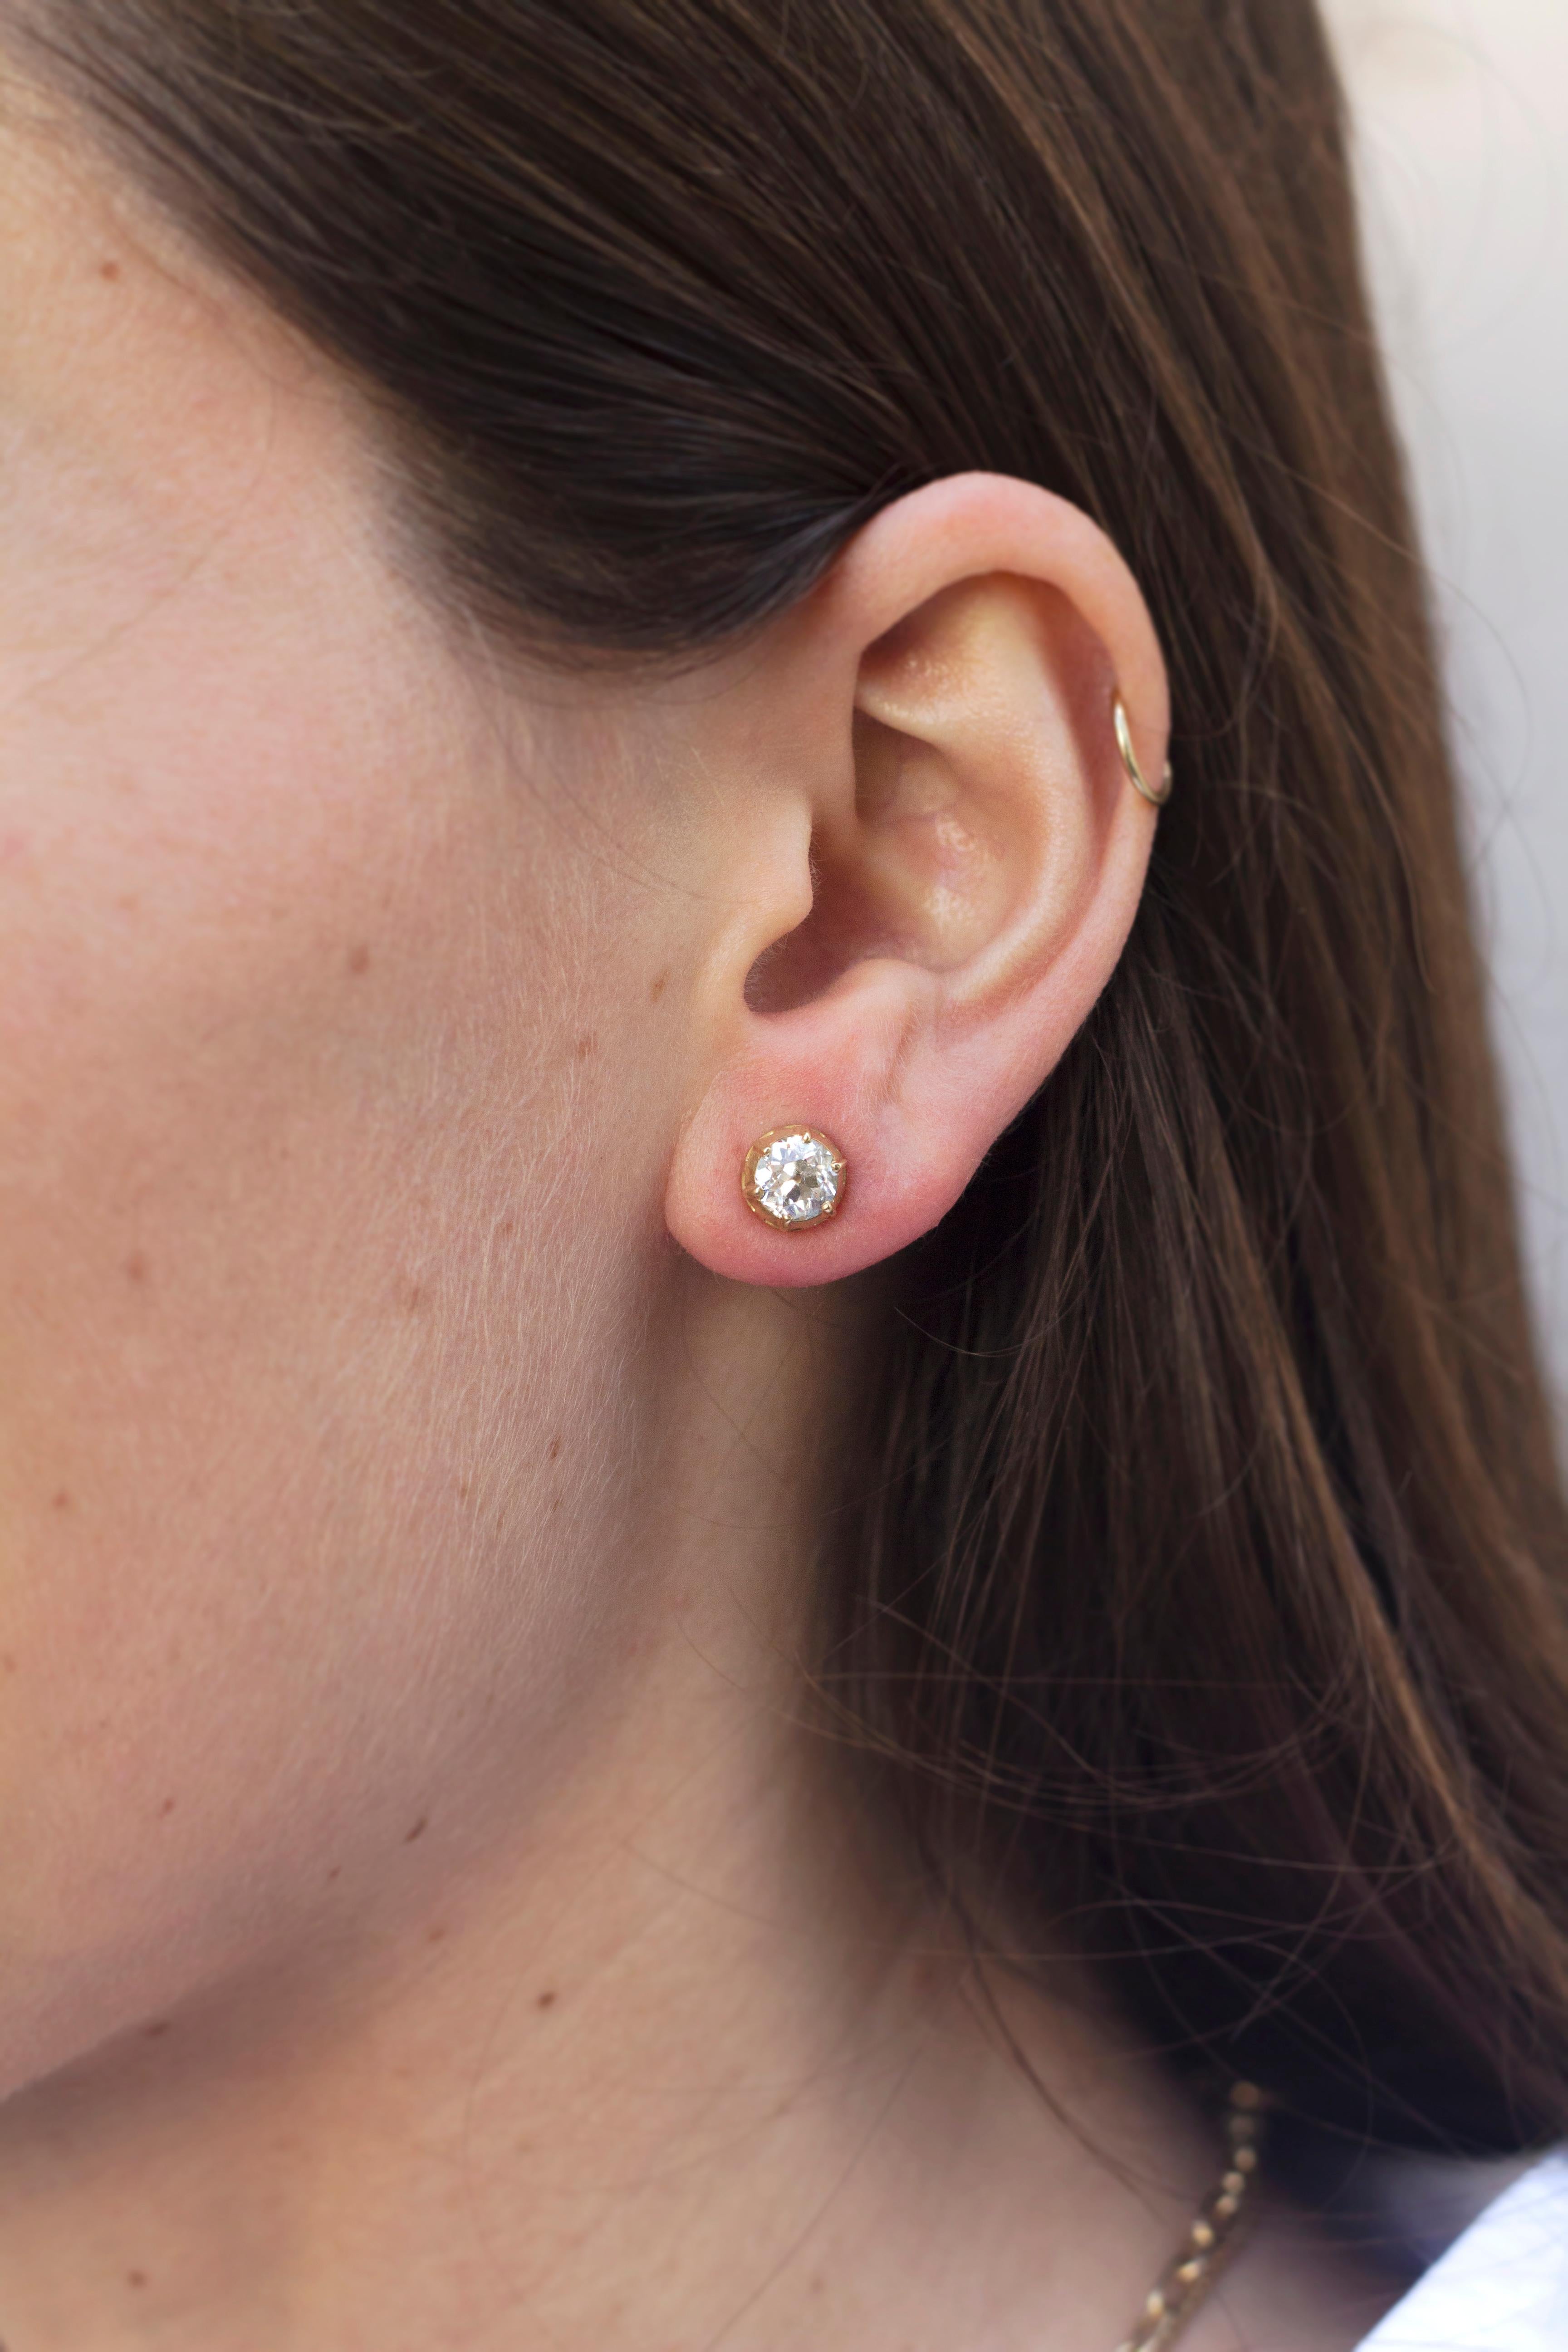 Women's Handcrafted Maude Old European Cut Diamond Stud Earrings by Single Stone